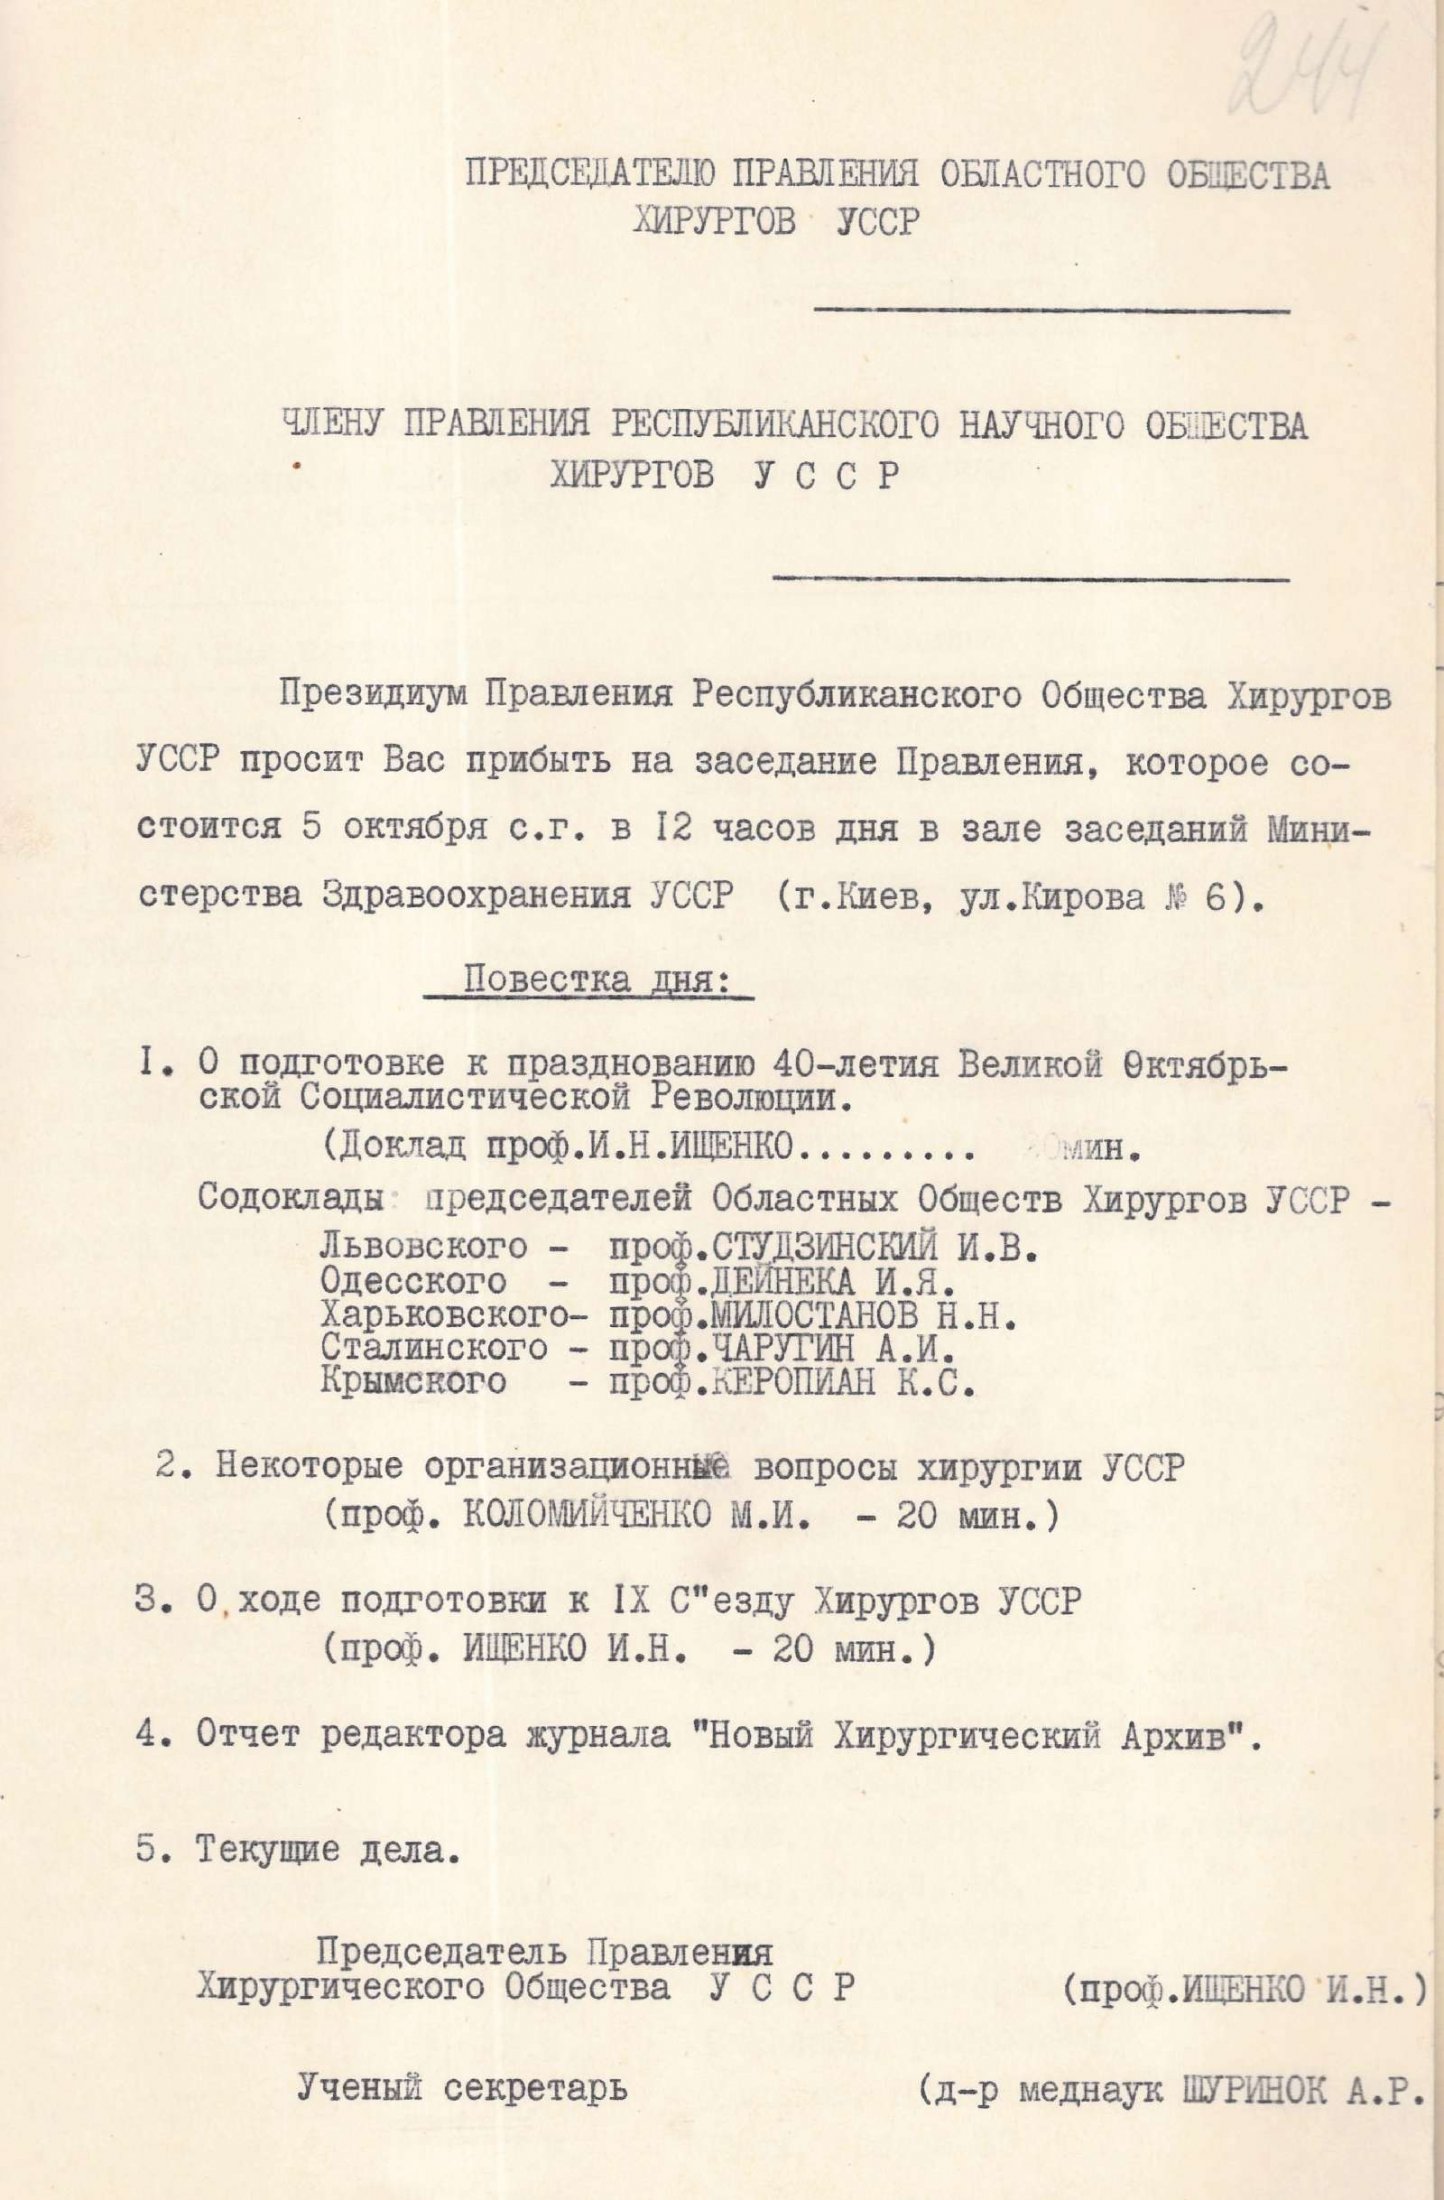 Список членів правління Республіканської наукової спілки хірургів Української РСР до якої увійшов професор М. Амосов. 17 вересня 1957 р.